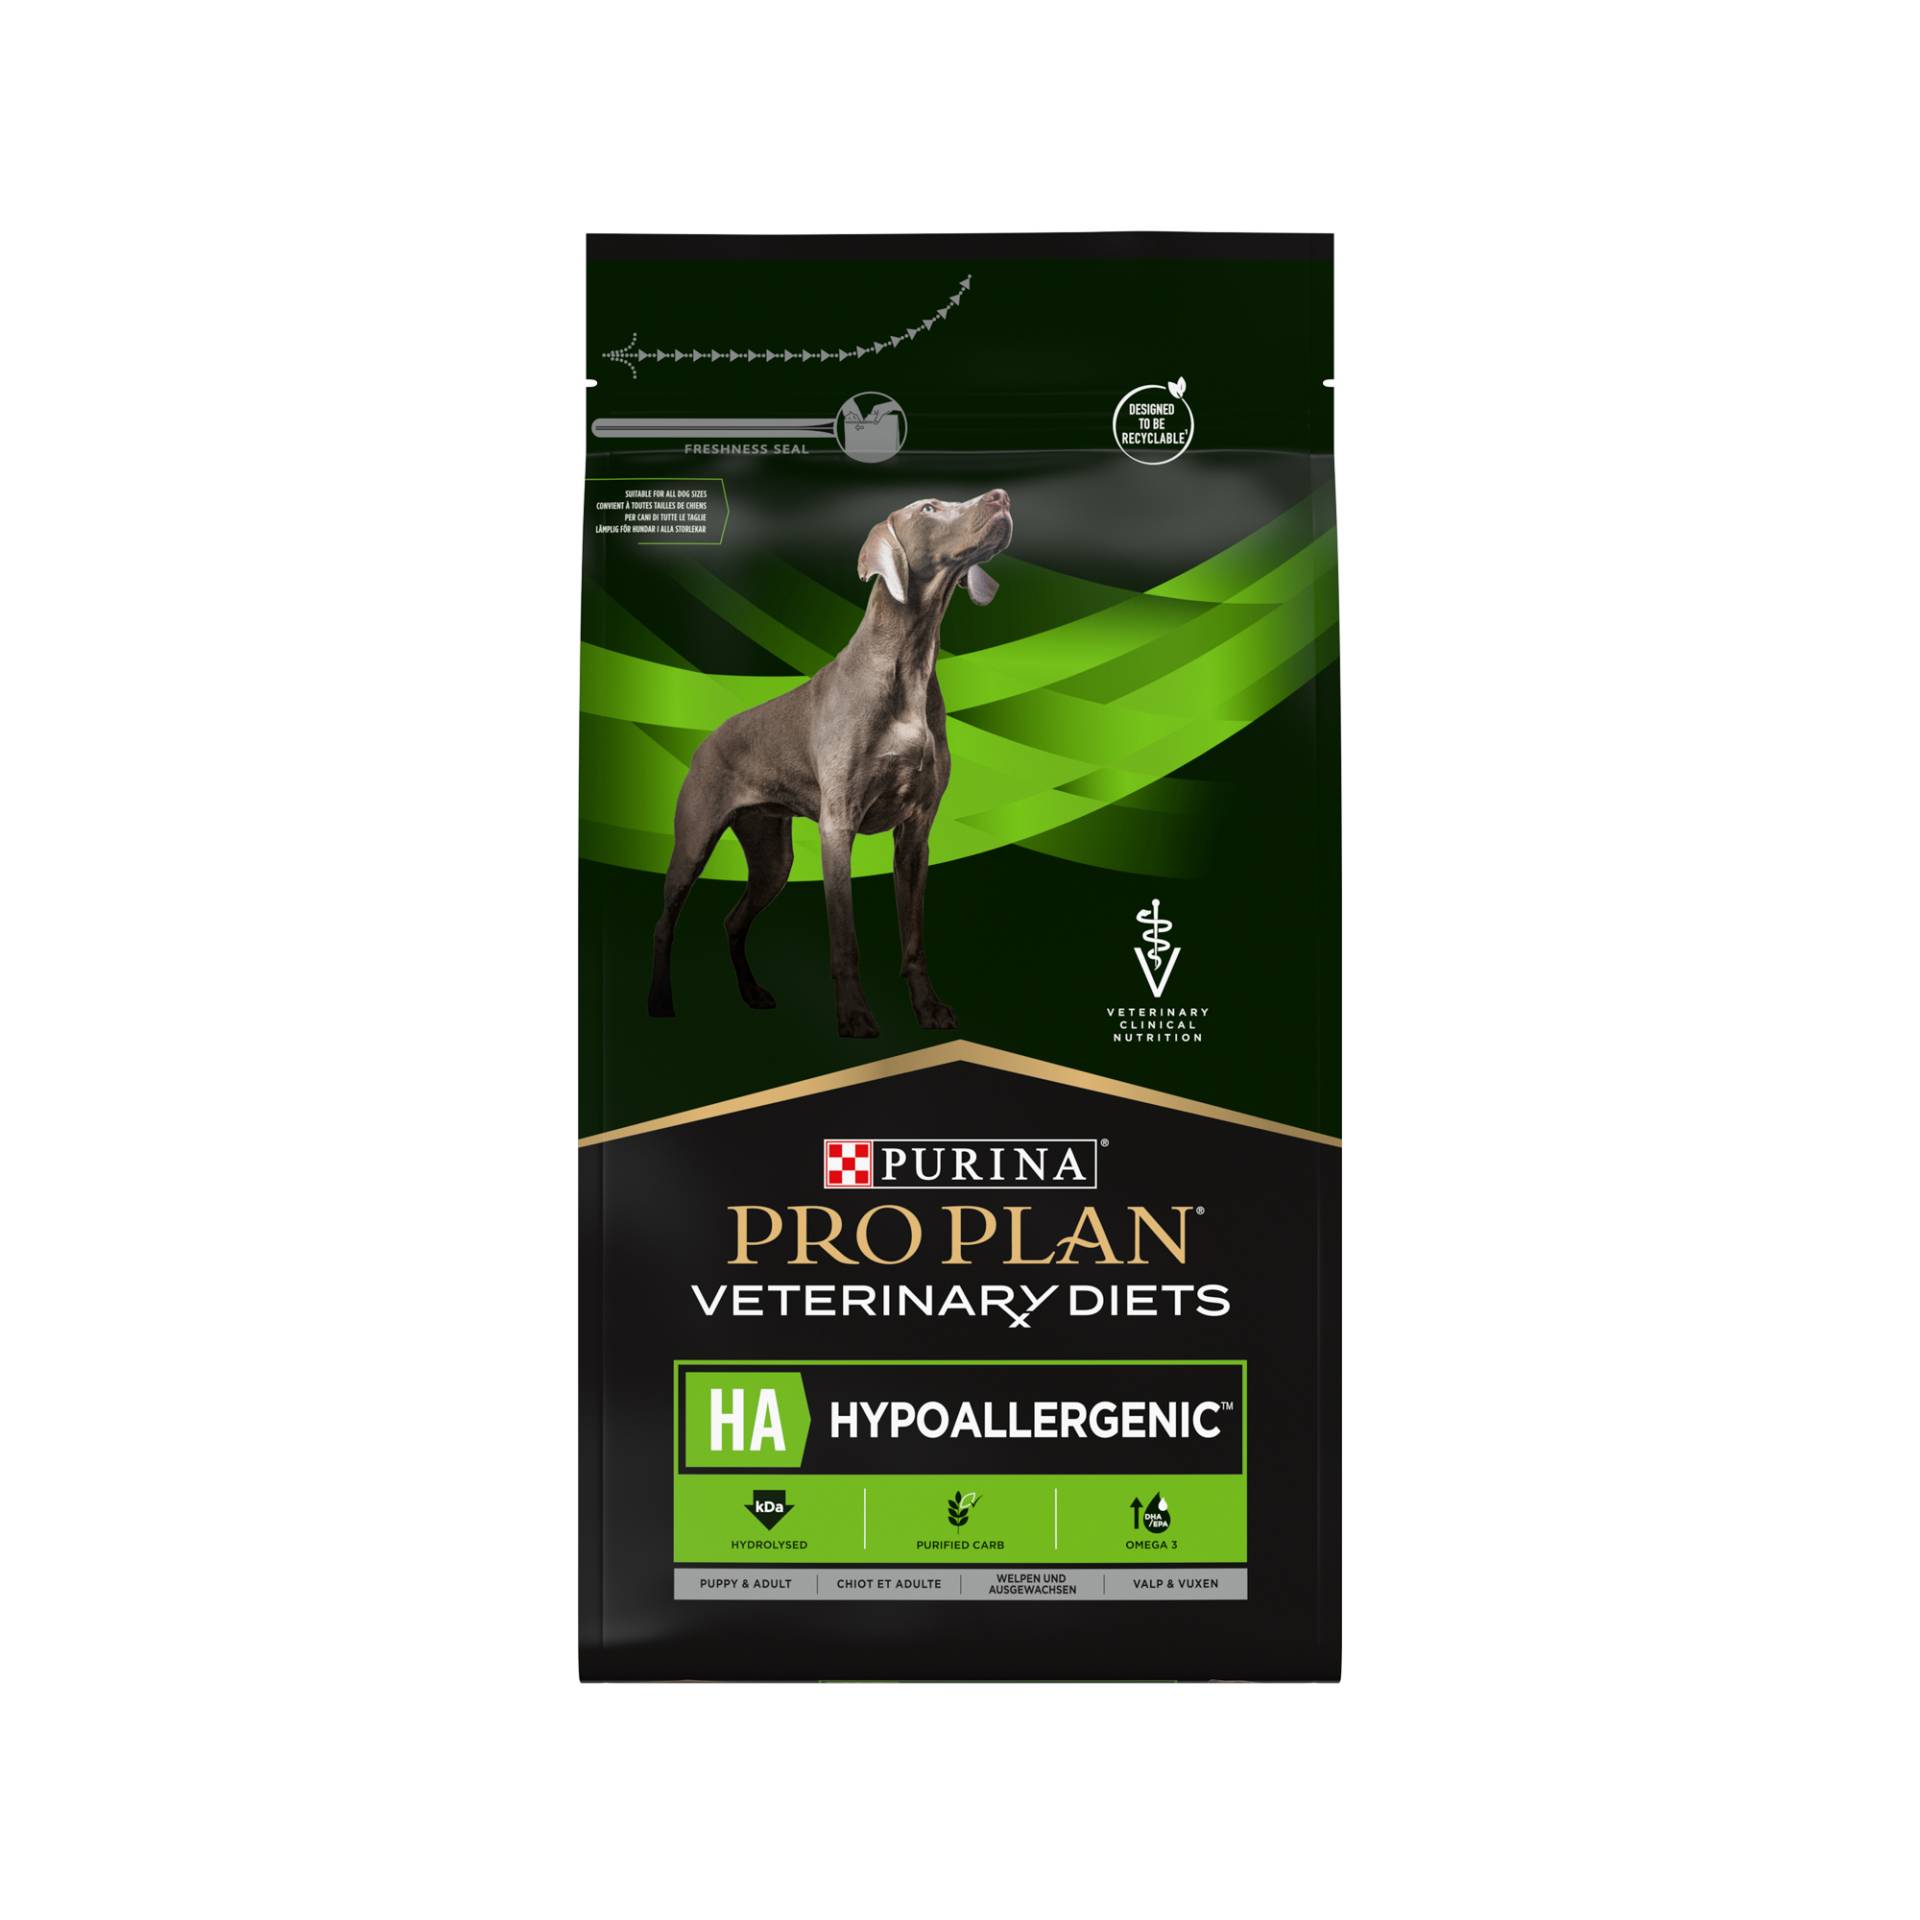 Purina Pro Plan Veterinary Diets HA Hypoallergenic Hund - 11 kg von Purina